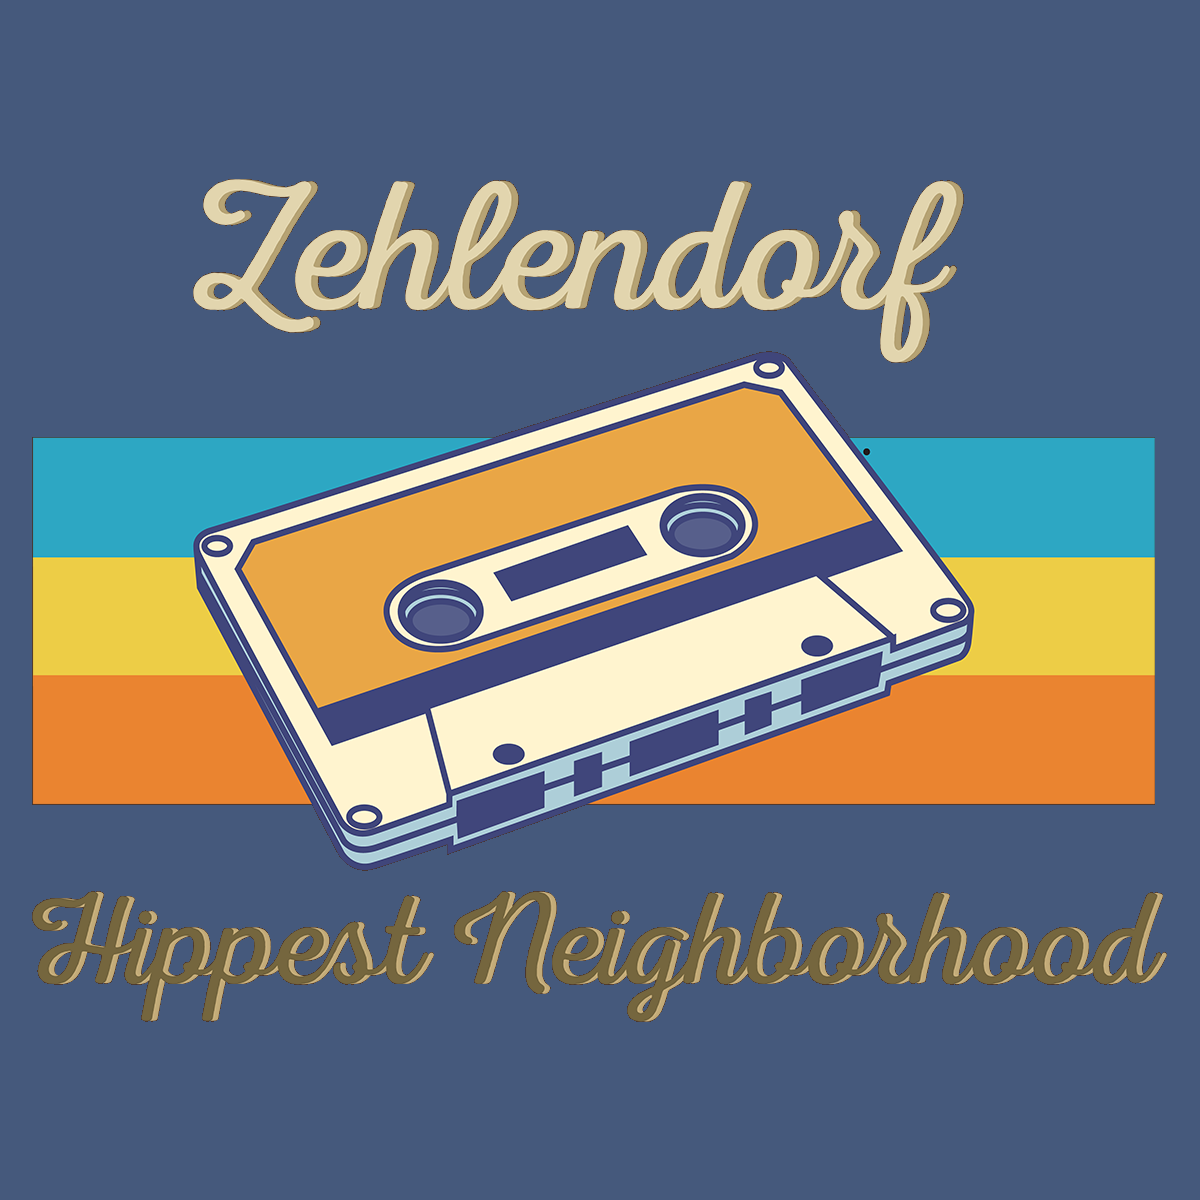 Zehlendorf Hippest Neighborhood